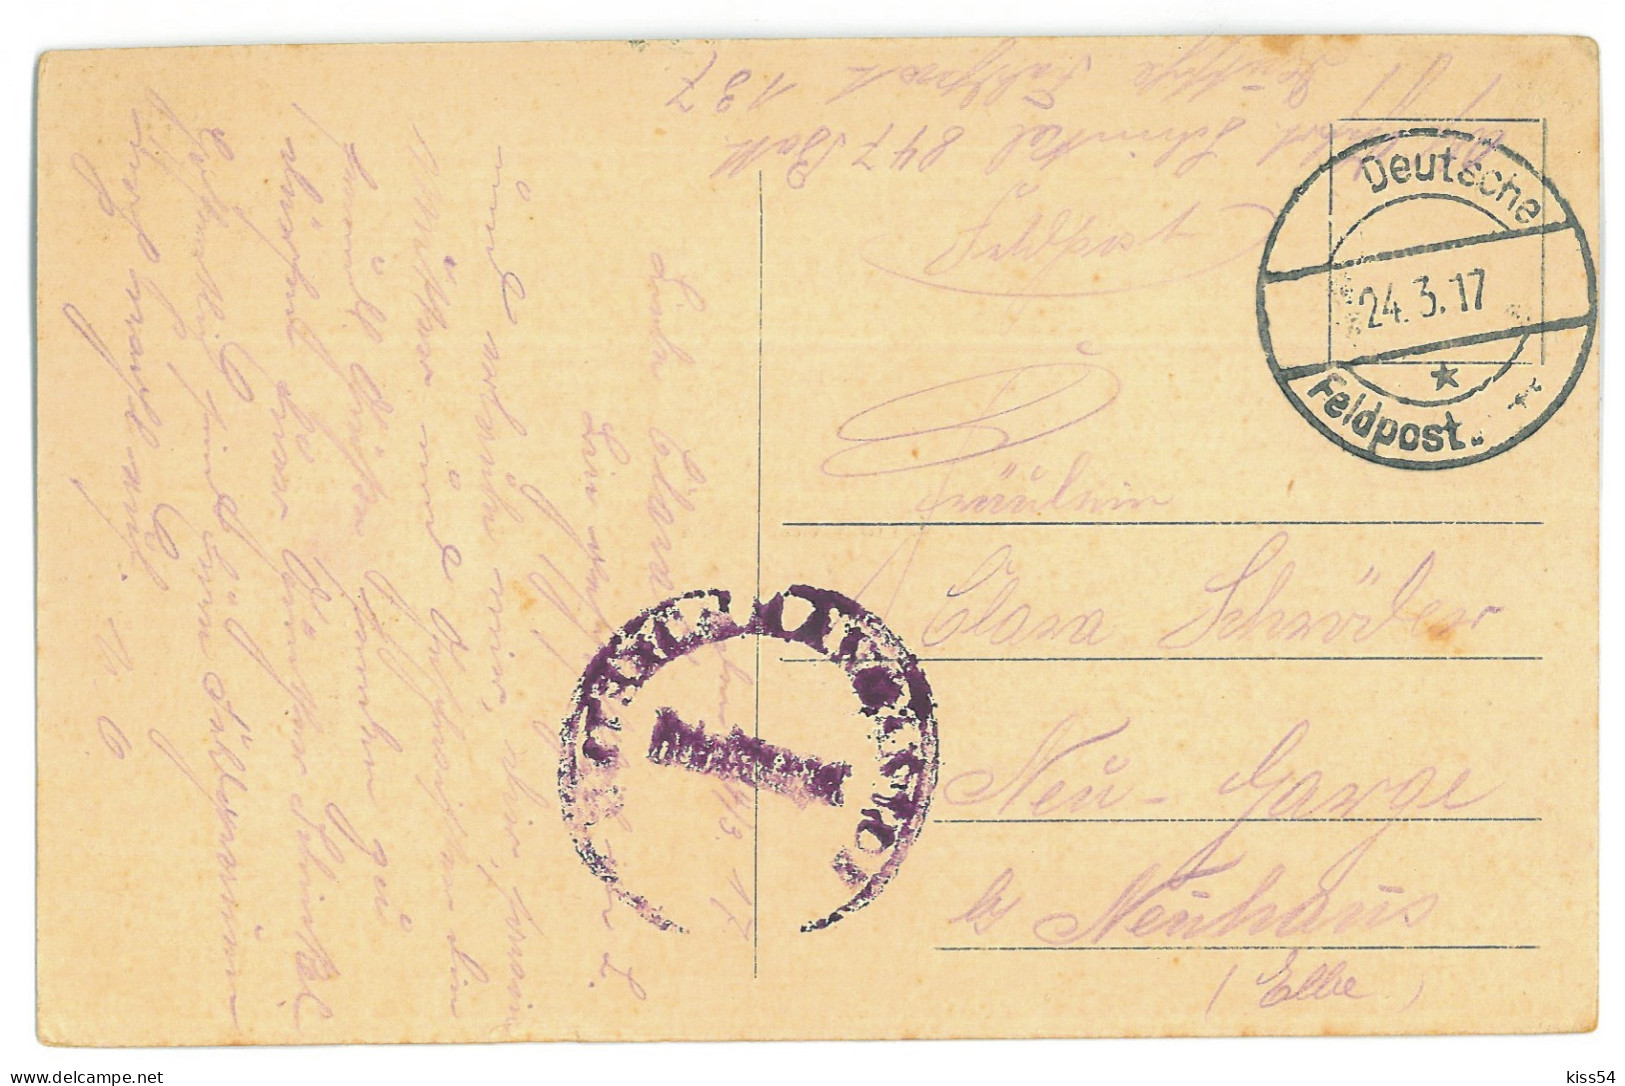 BL 31 - 24499 LIDA, Belarus - Old Postcard, CENSOR - Used - 1917 - Belarus